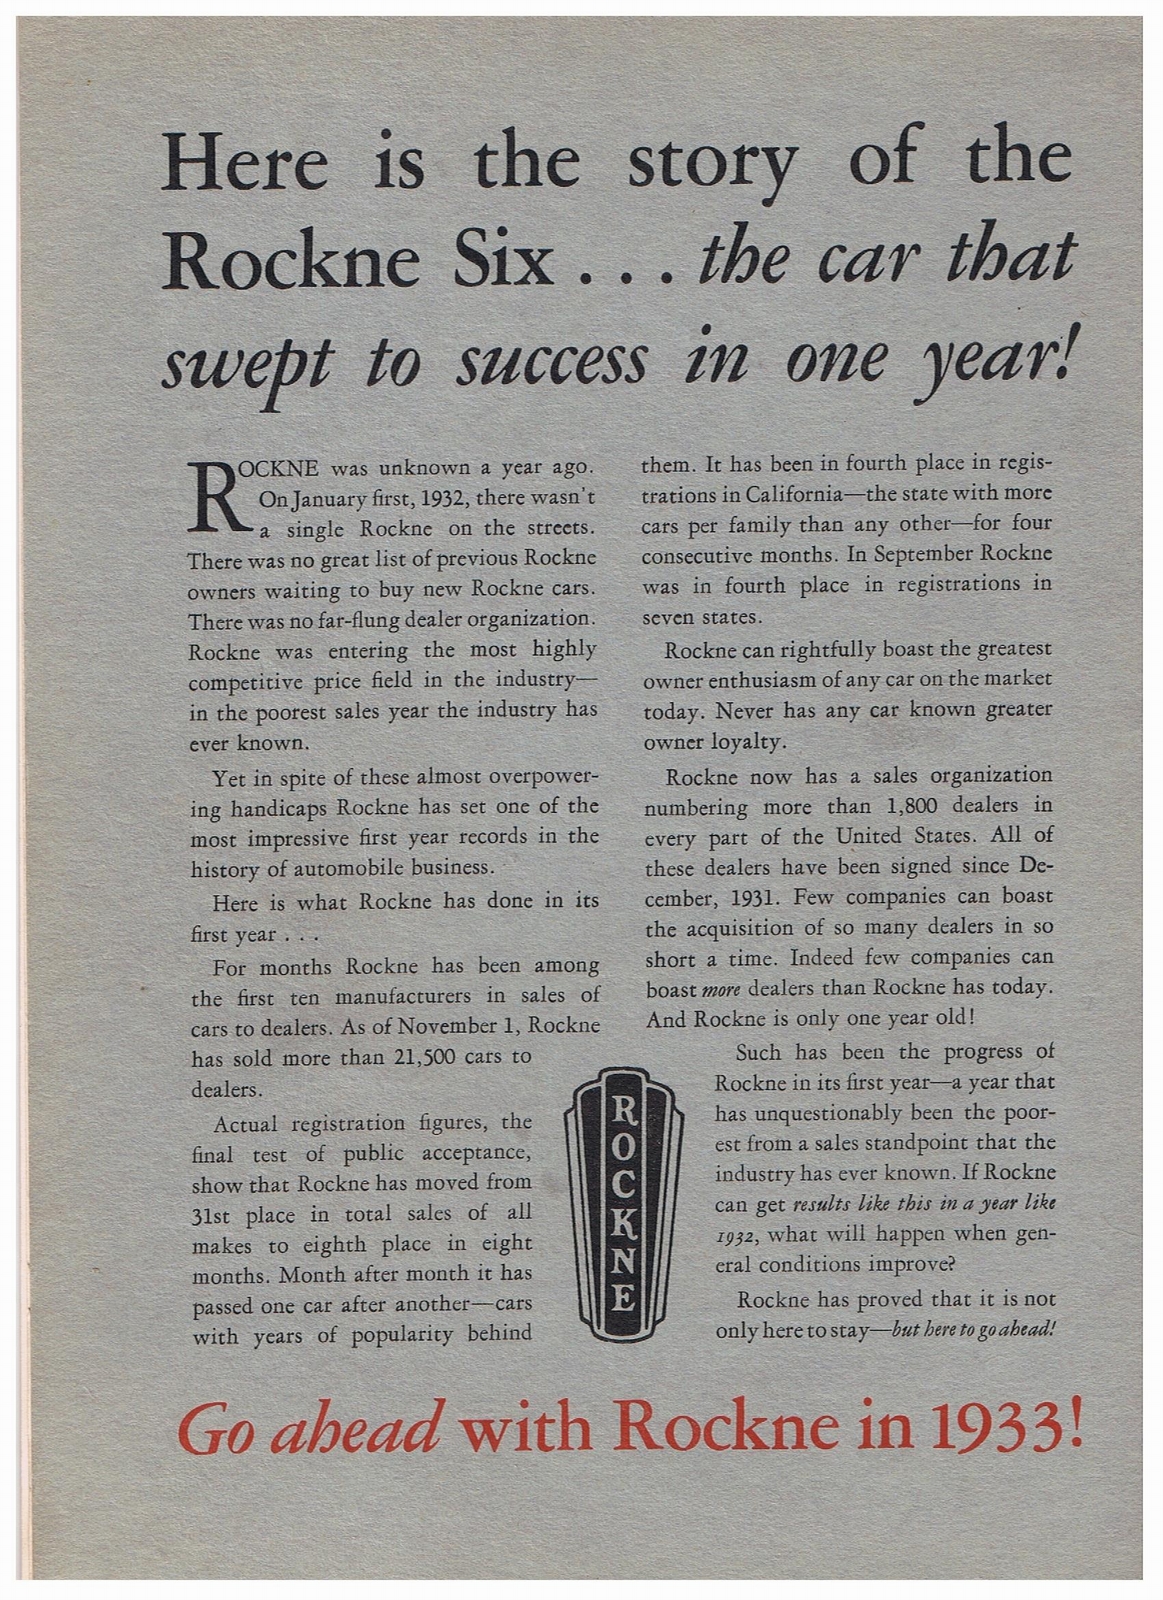 n_1933 Rockne 6 Presentation Booklet-14.jpg